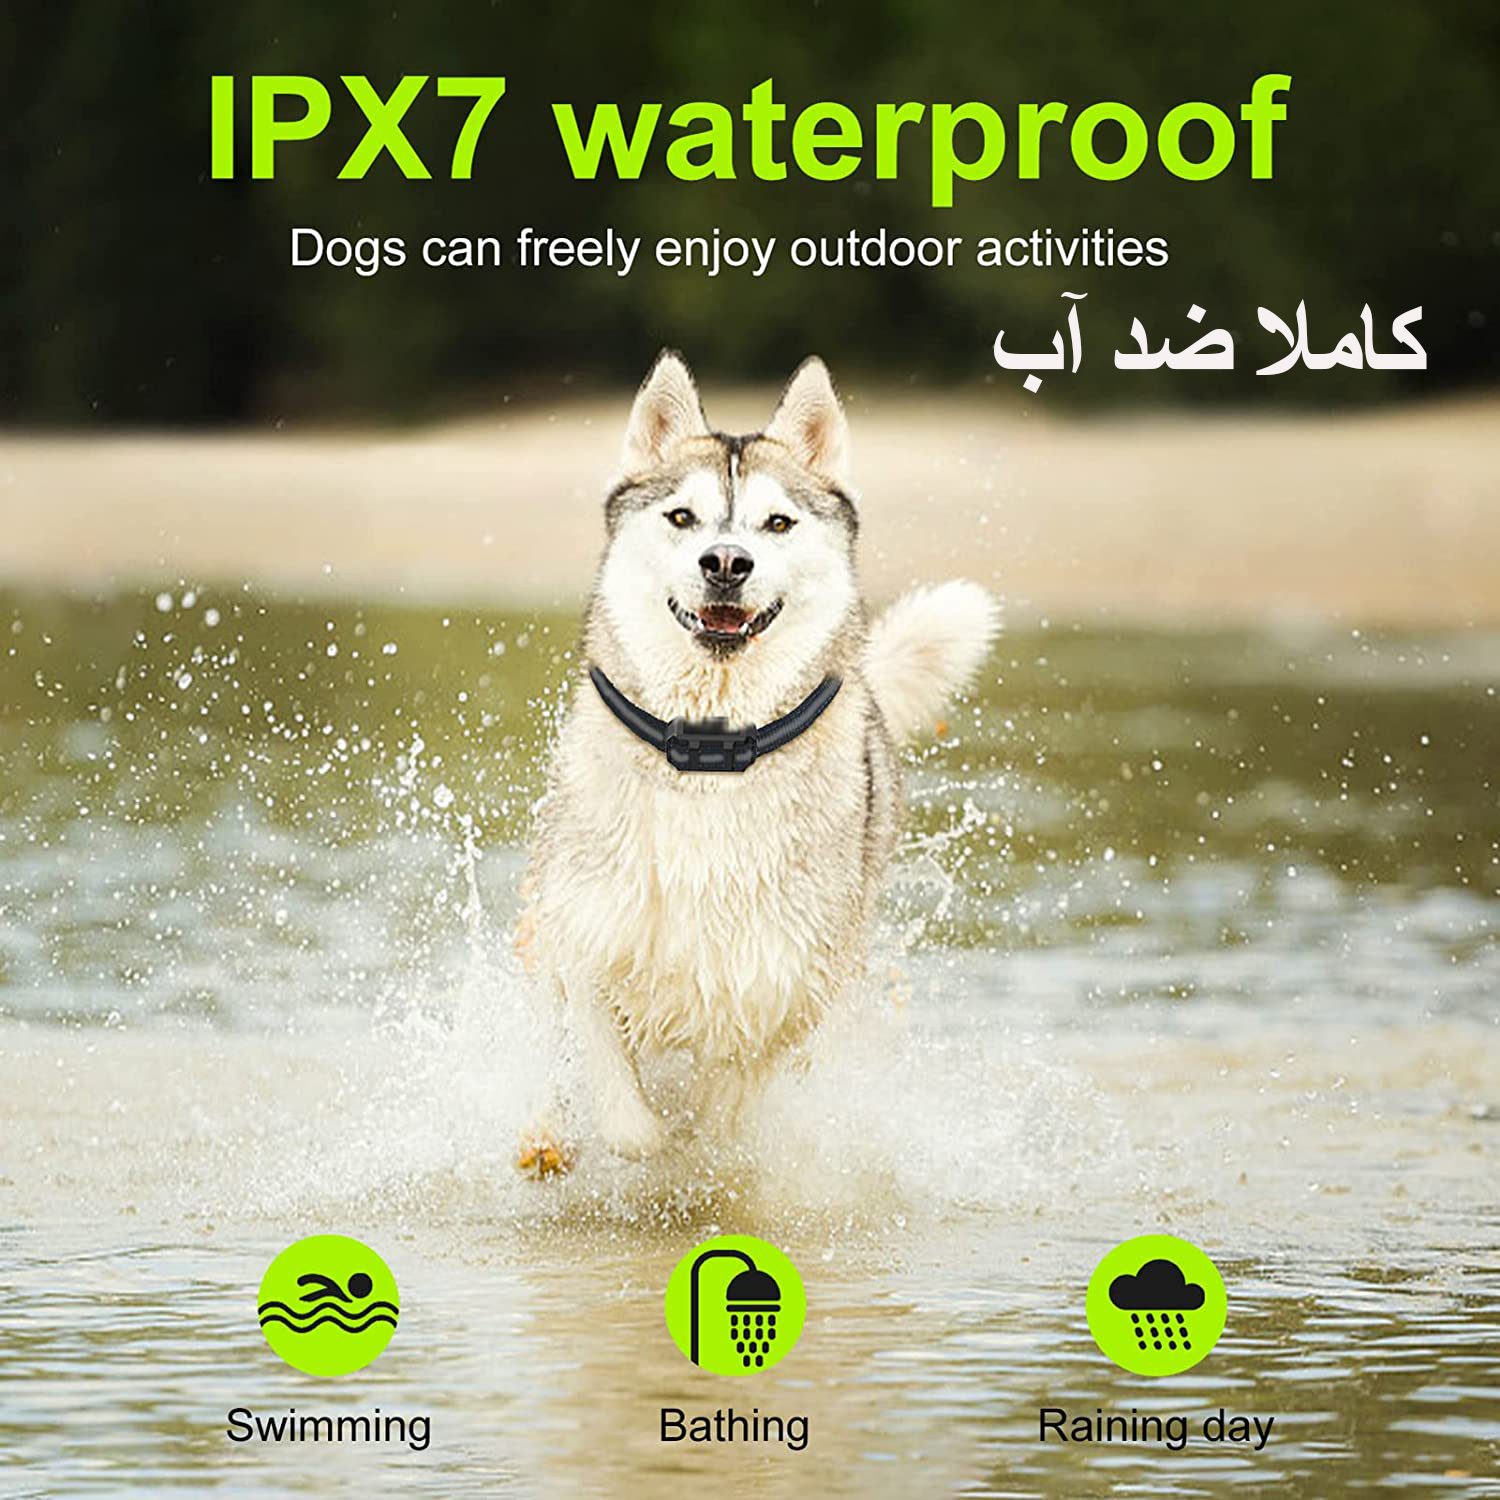 مناسب انواع سگ ، کاملا ضد آب قابل شارژ و کنترل از راه دور می باشد.